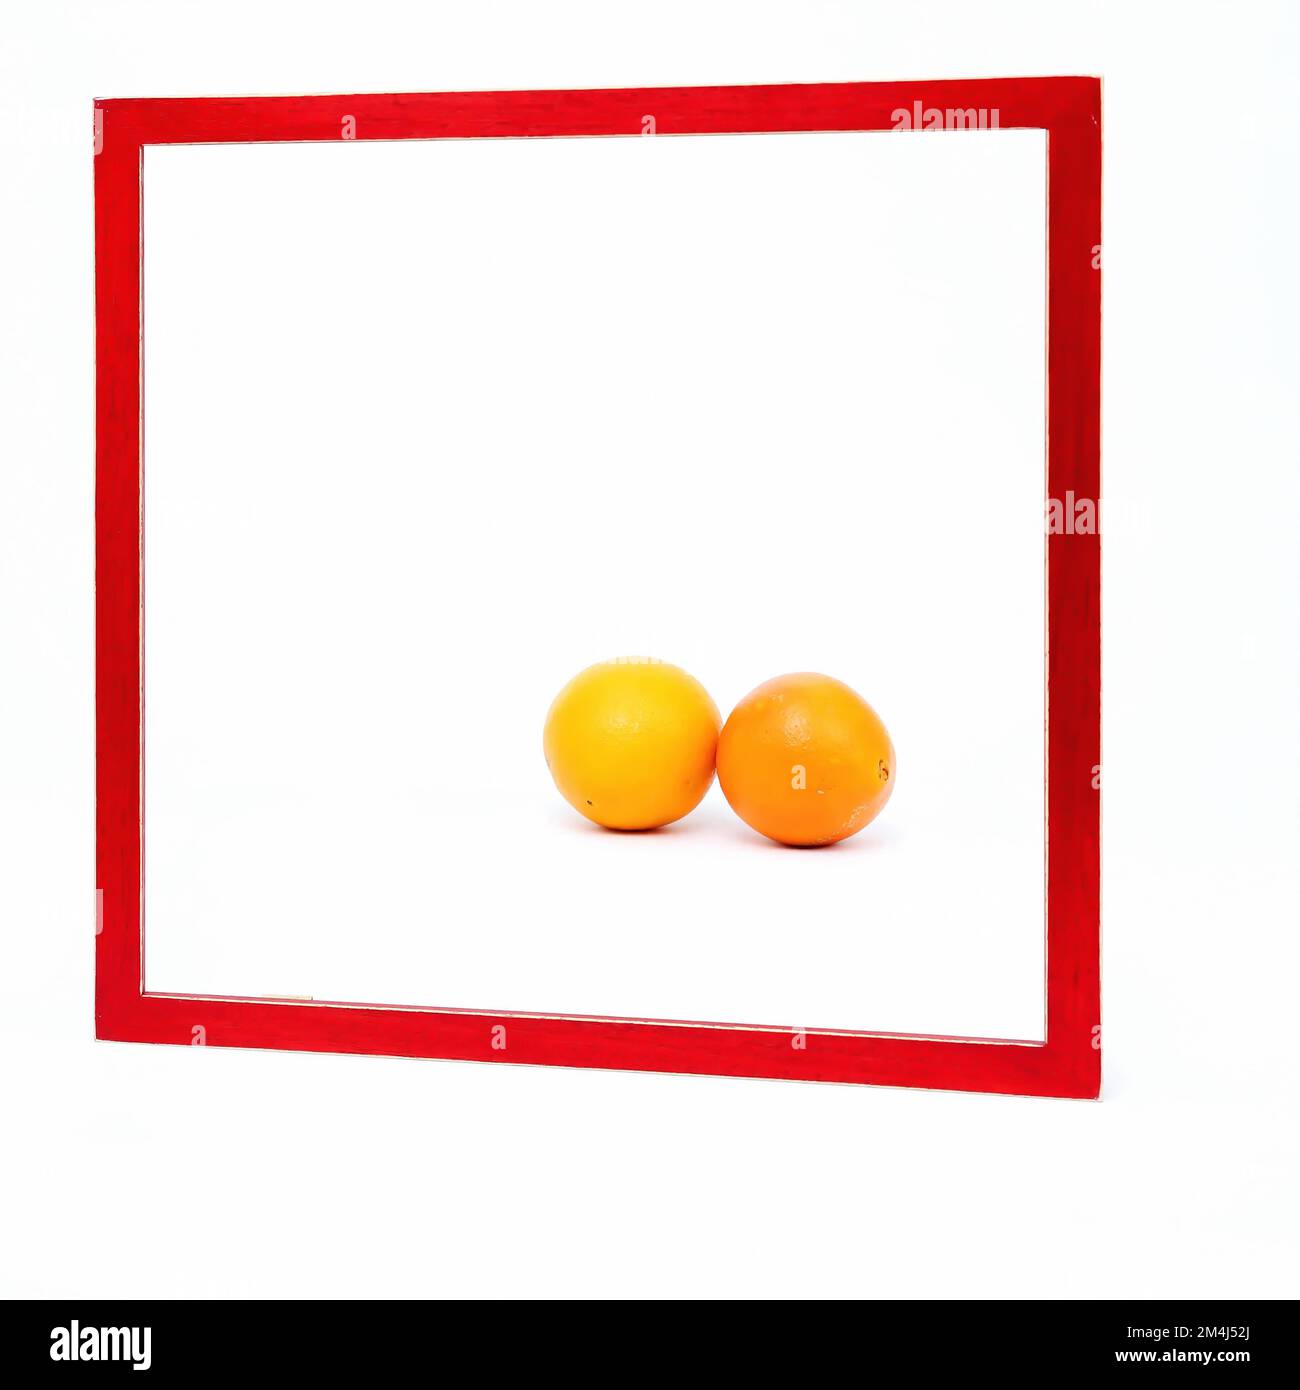 Quadratischer roter Rahmen auf weißem Hintergrund. Zwei Orangen liegen im Rahmen Stockfoto